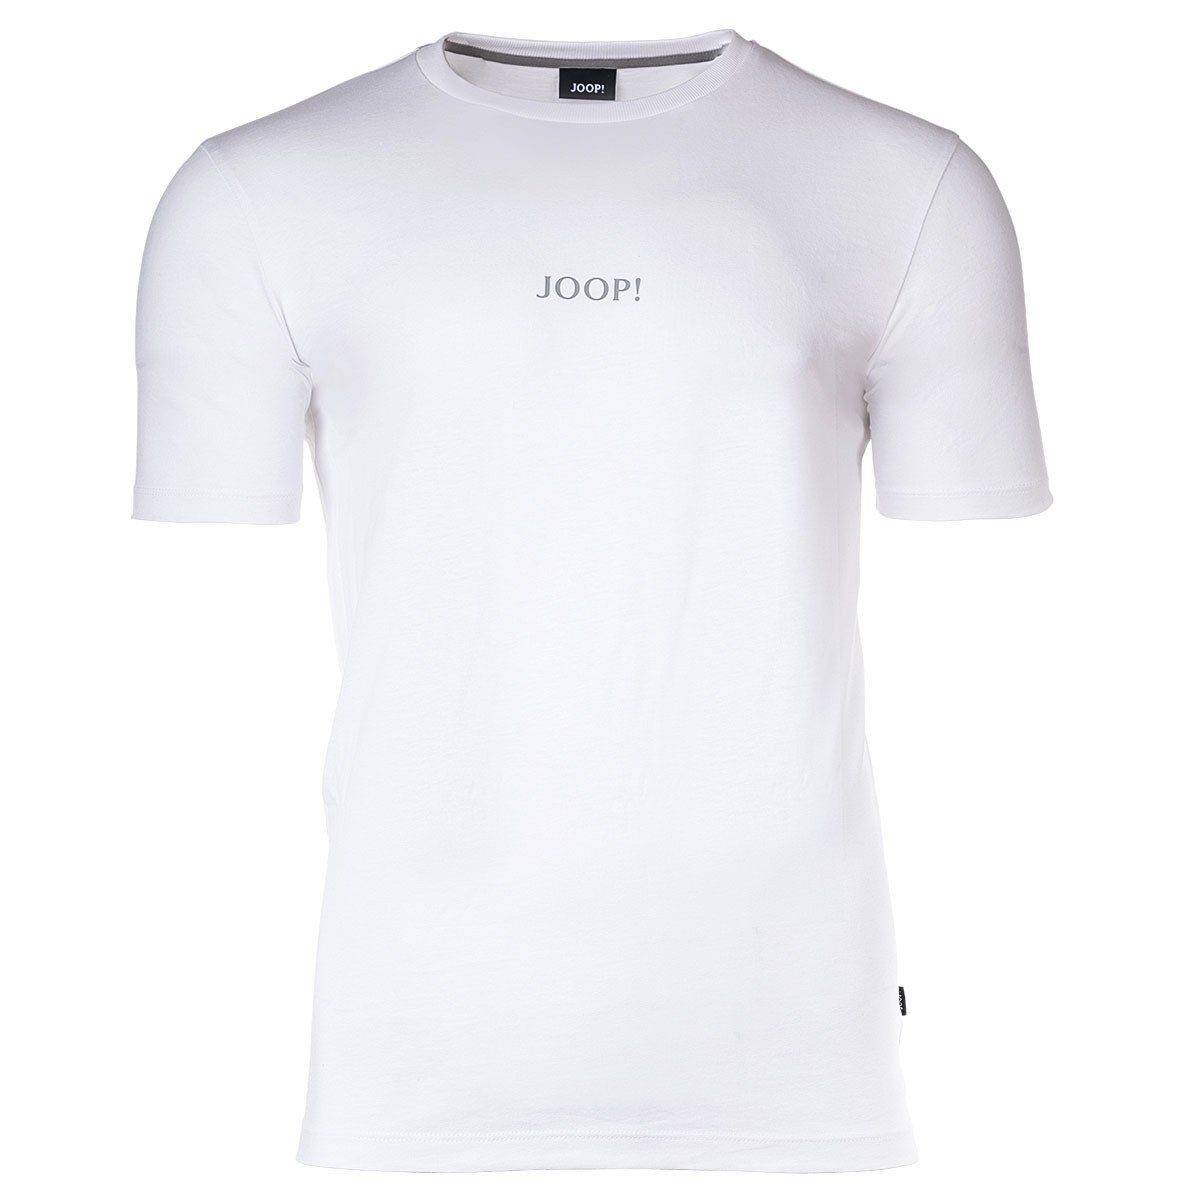 2er Unterziehshirt Herren T-Shirt, Weiß Joop! Pack T-Shirt -